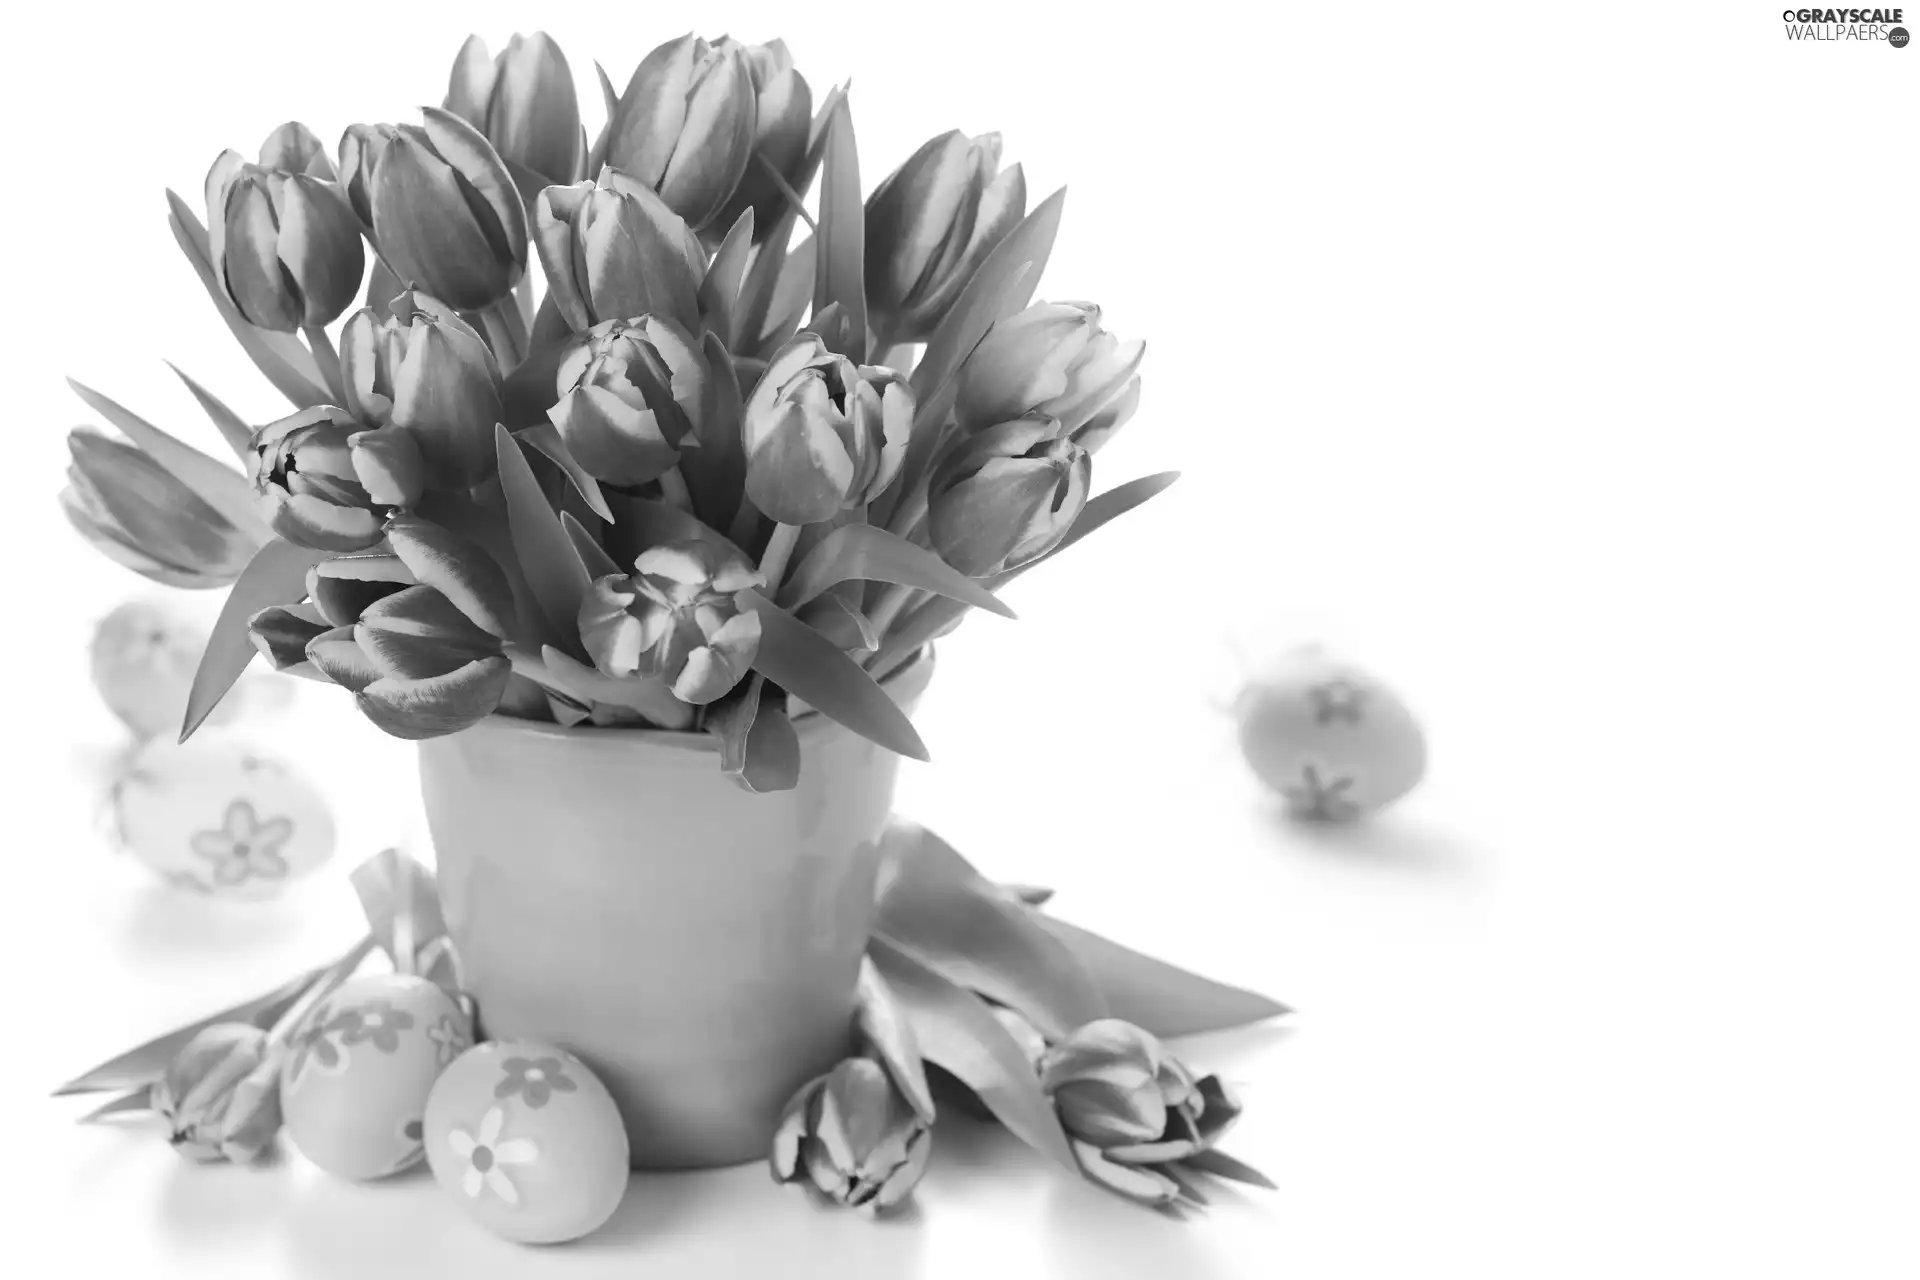 Tulips, Easter, eggs